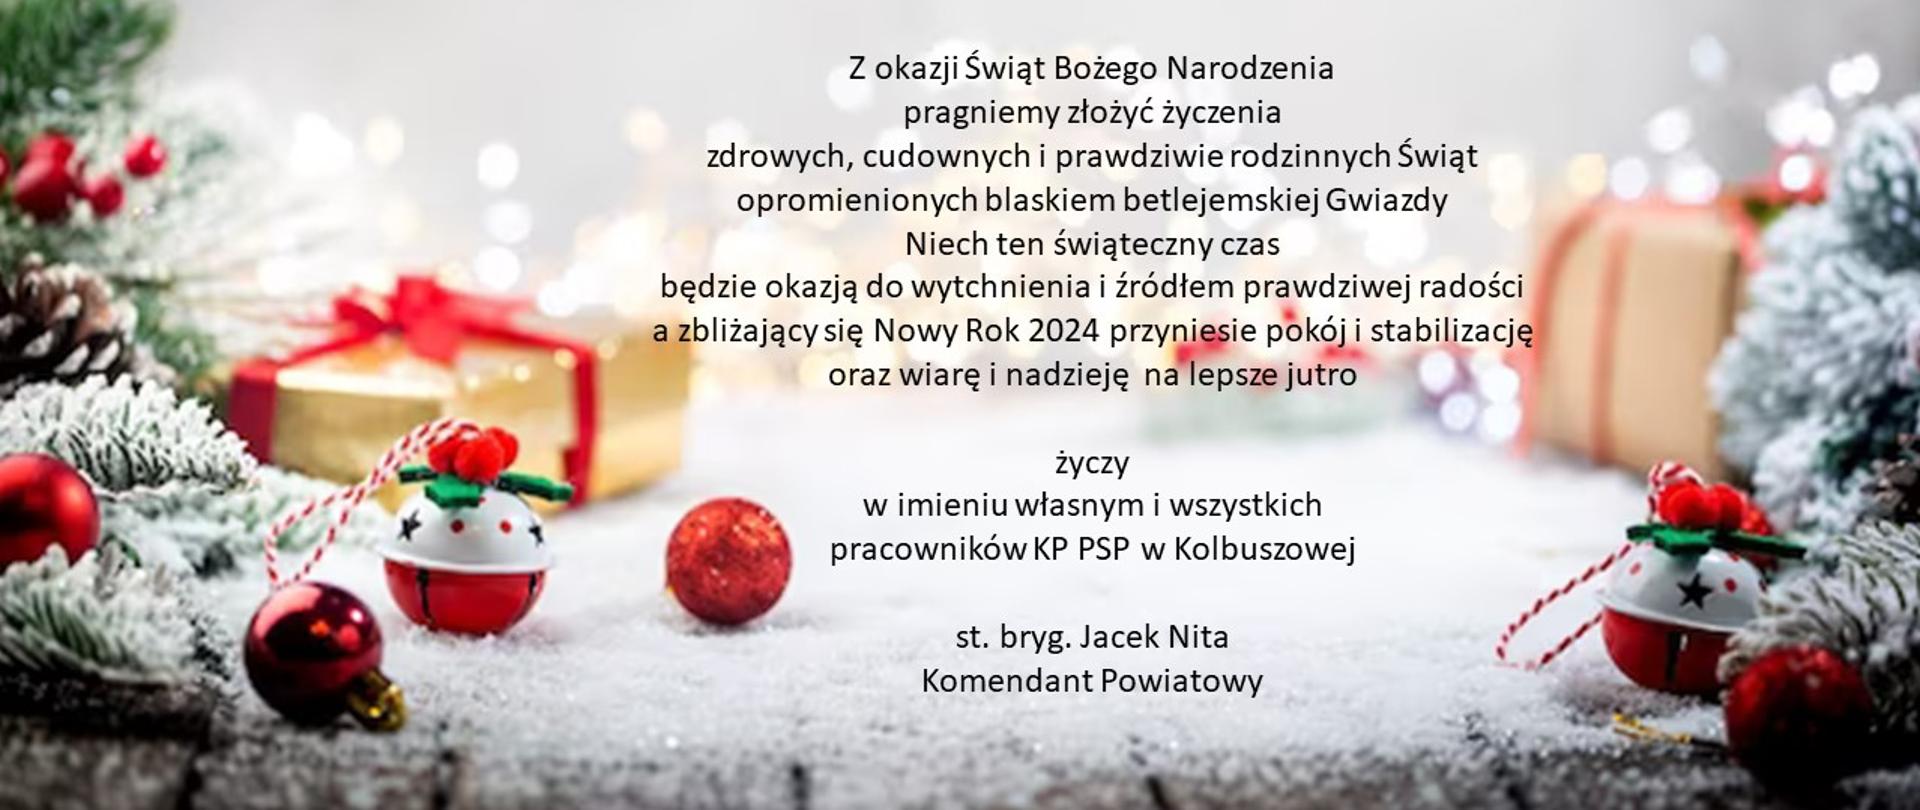 Zdjęcie kartki Bożonarodzeniowej z życzeniami z okazji Świąt Bożego Narodzenia oraz Nowego Roku: po prawej i lewej stronie choiny z bąbkami, pomiędzy nimi w tle światełka ozdobne. W lewym górnym roku cytat, na środku treść życzeń - pod nimi składający składający życzenia.